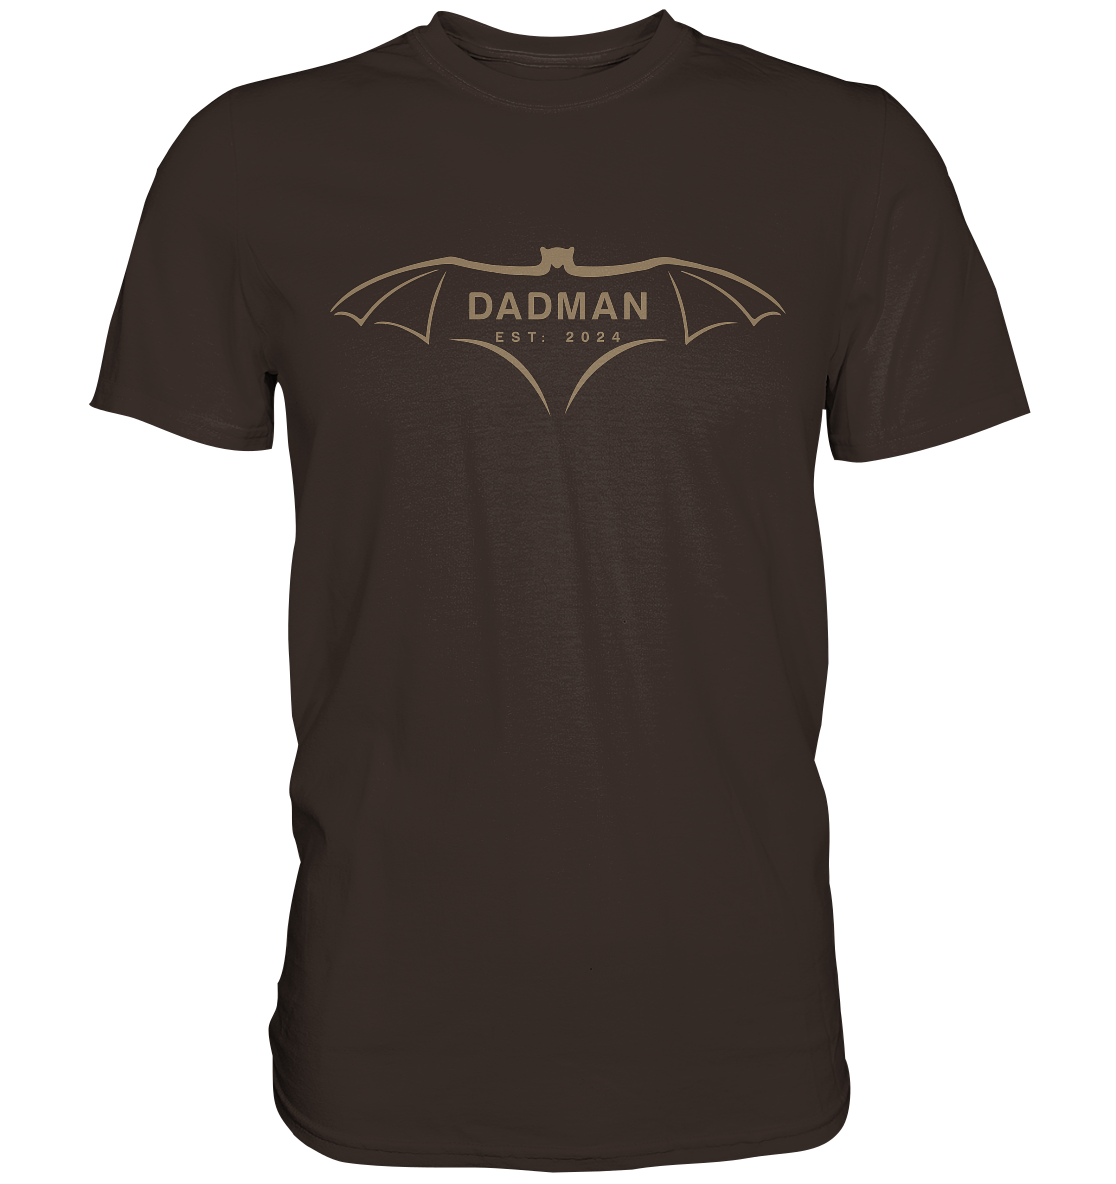 DADMAN 2024 Edición Premium, fecha personalizable - Camiseta Premium